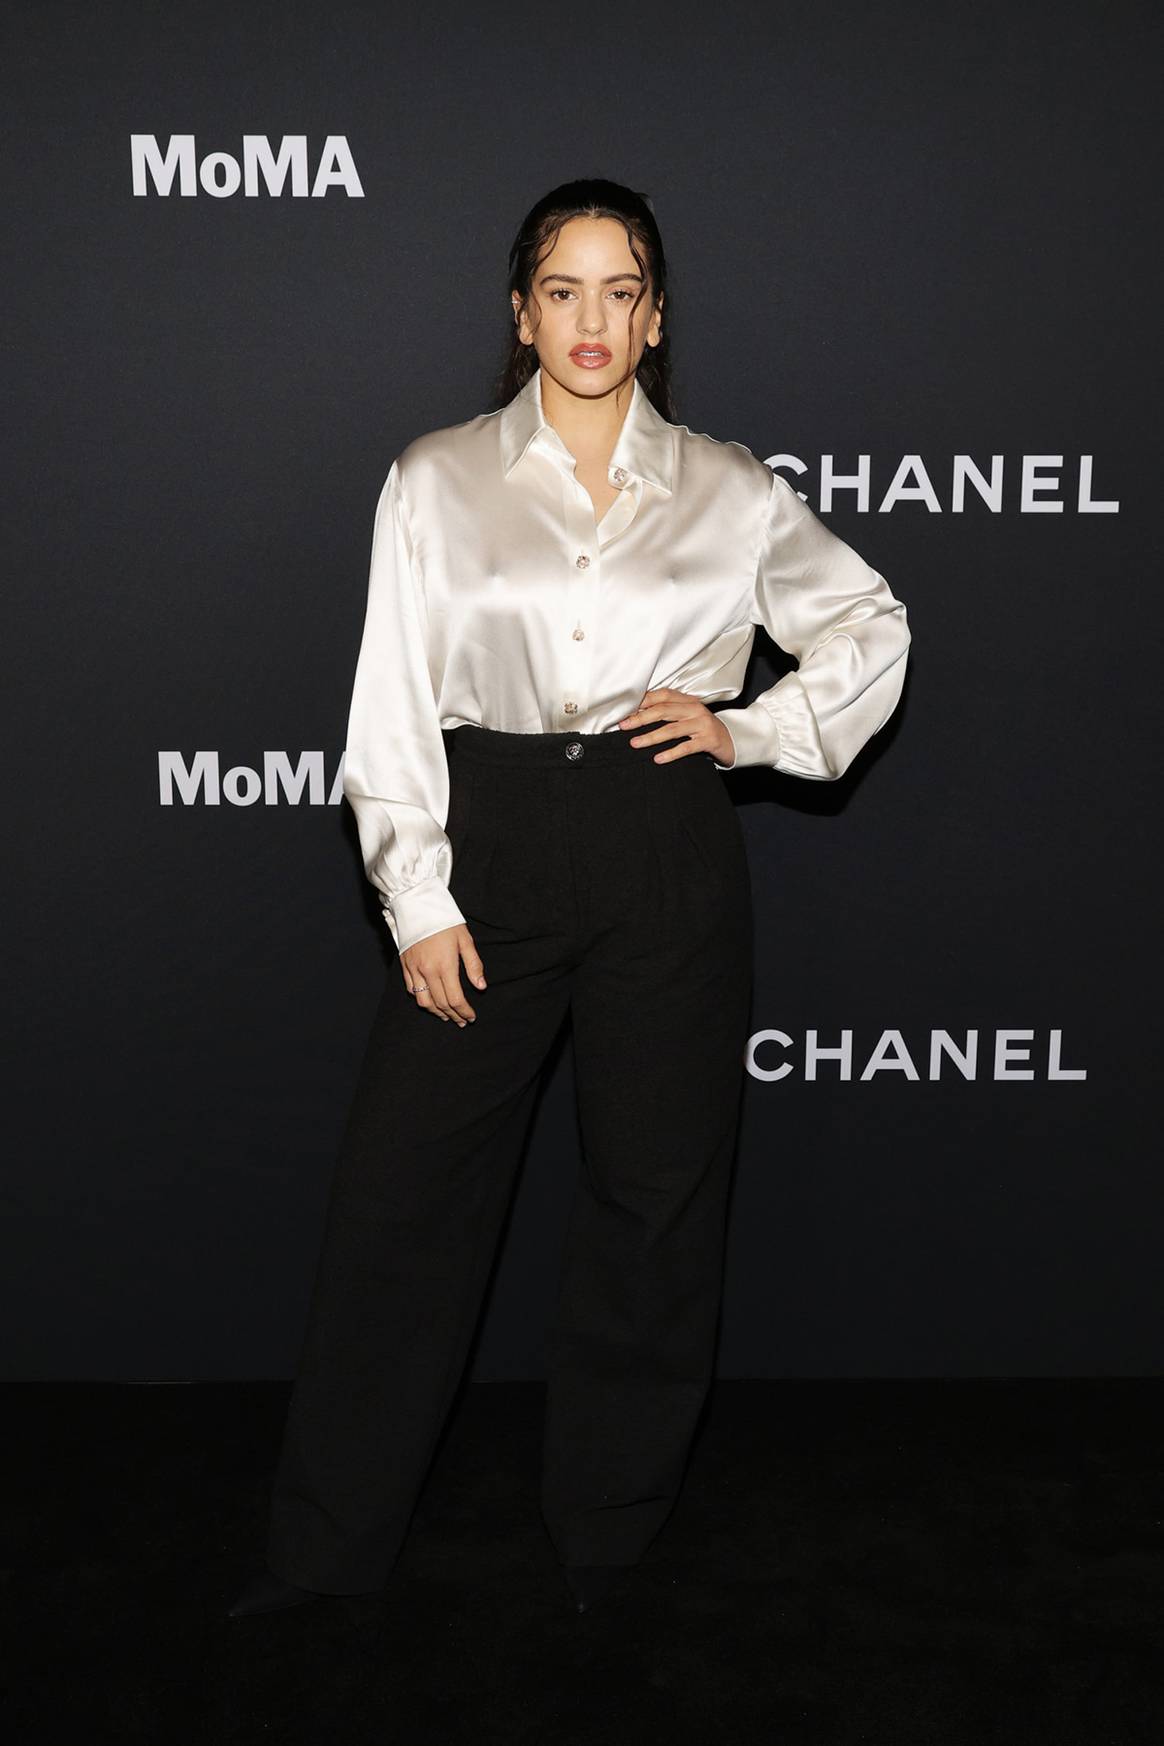 Photo Credits: Rosalía, 14ª gala anual Film Benefit 2021 del MoMa, patrocinada por Chanel. Chanel, fotografía de cortesía.